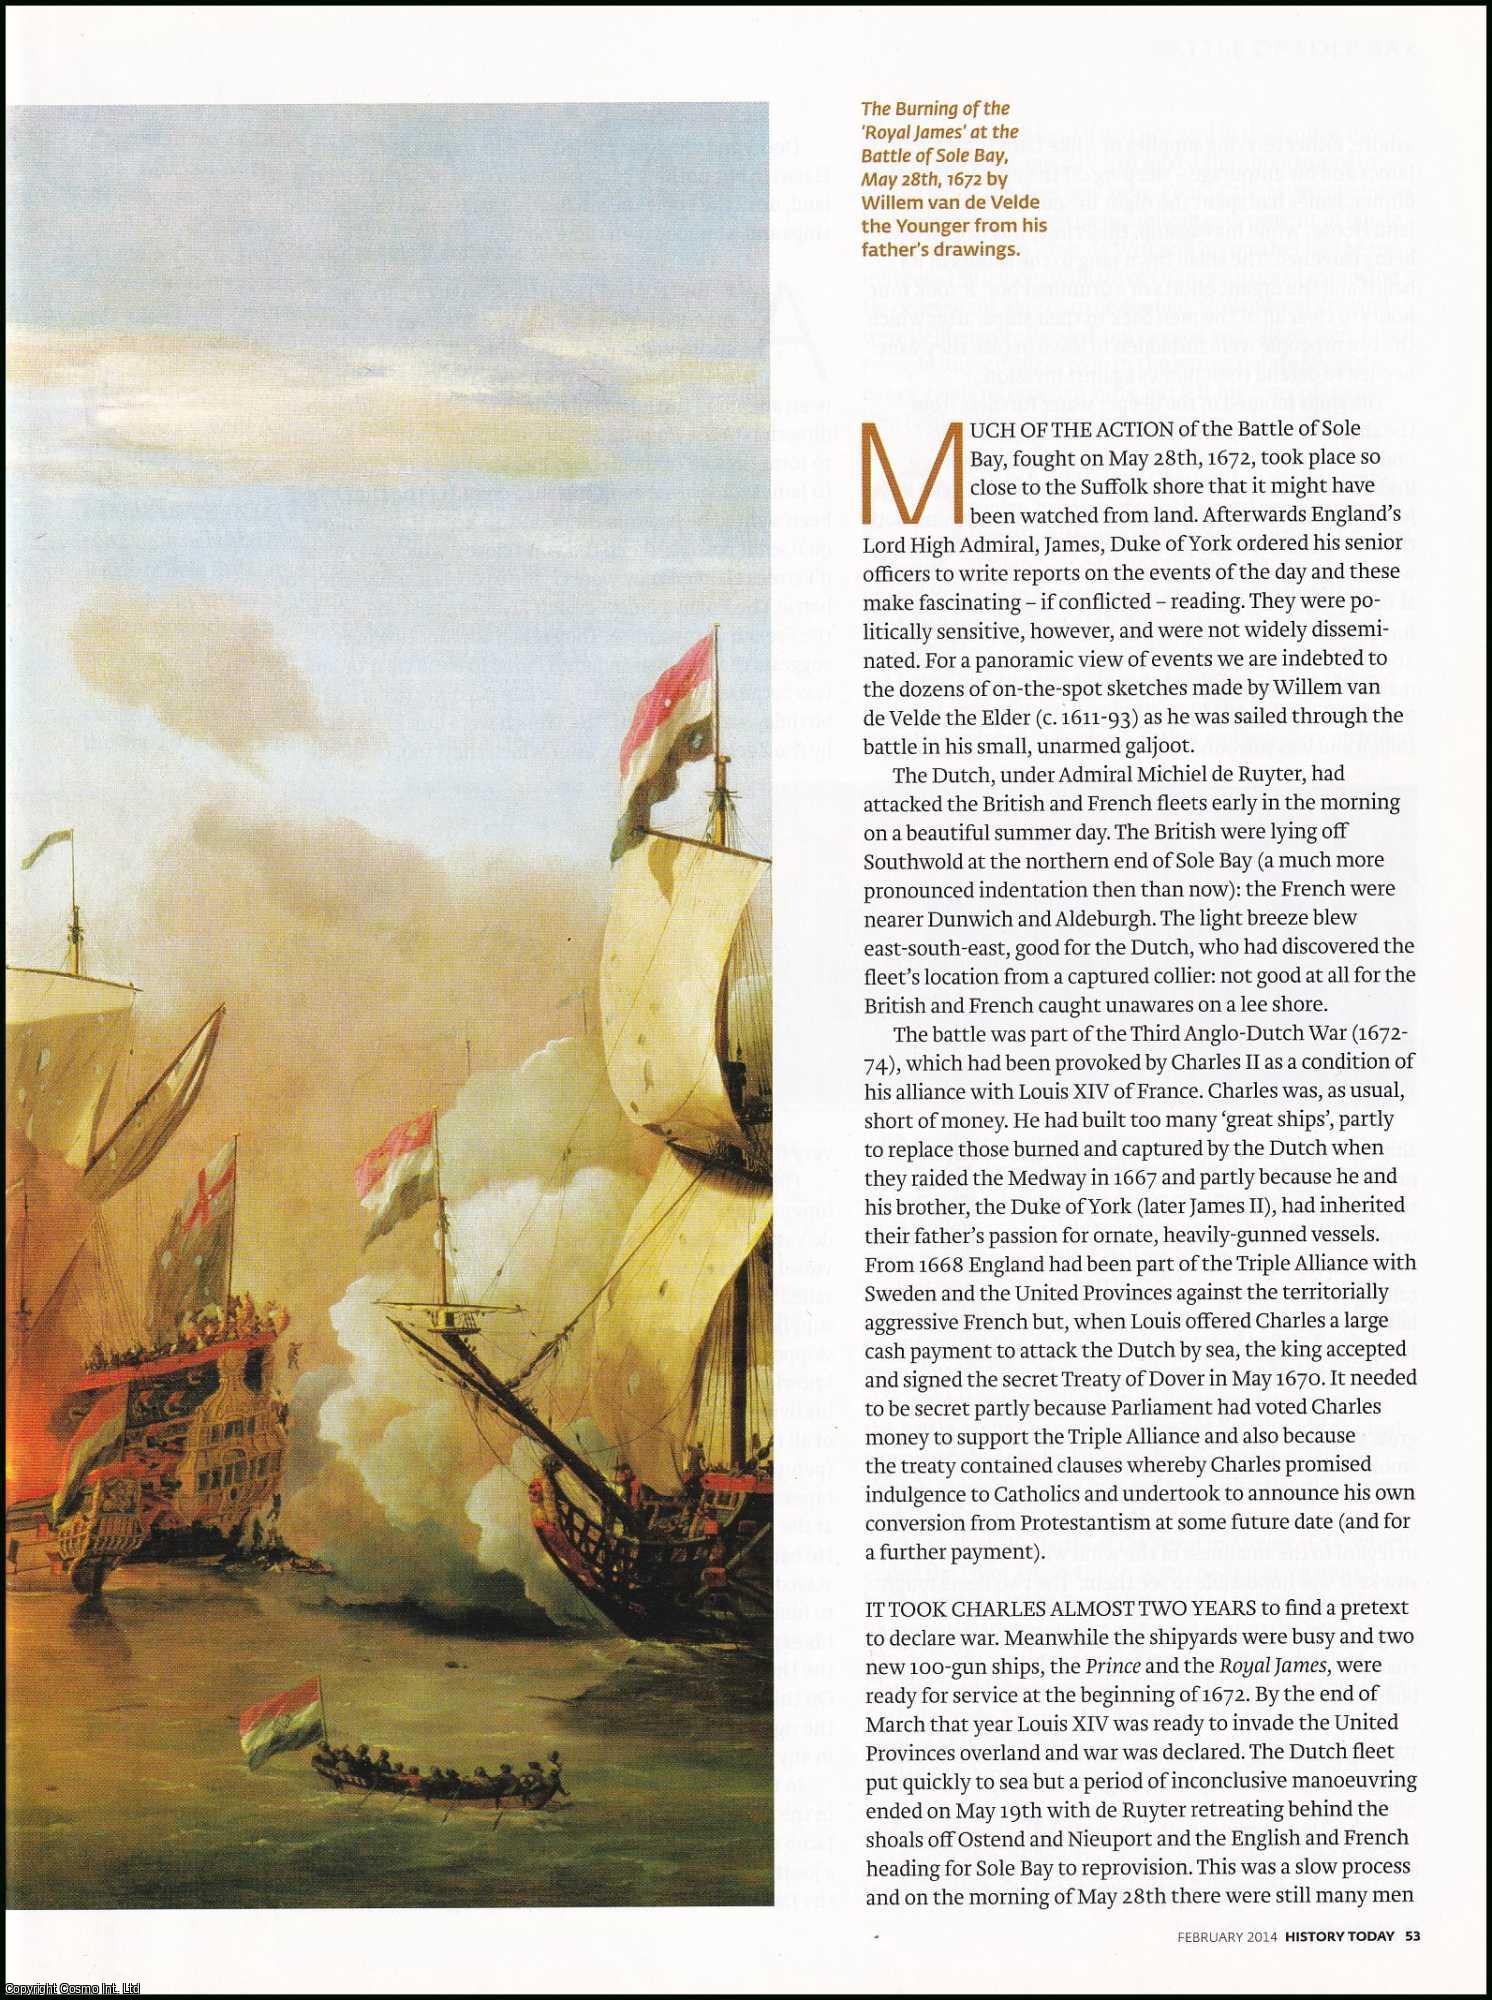 Julia Jones - The Career of Dutch Artist Willem van de Velde the Elder 1611-1693, the First Official War Artist. An original article from History Today magazine, 2014.